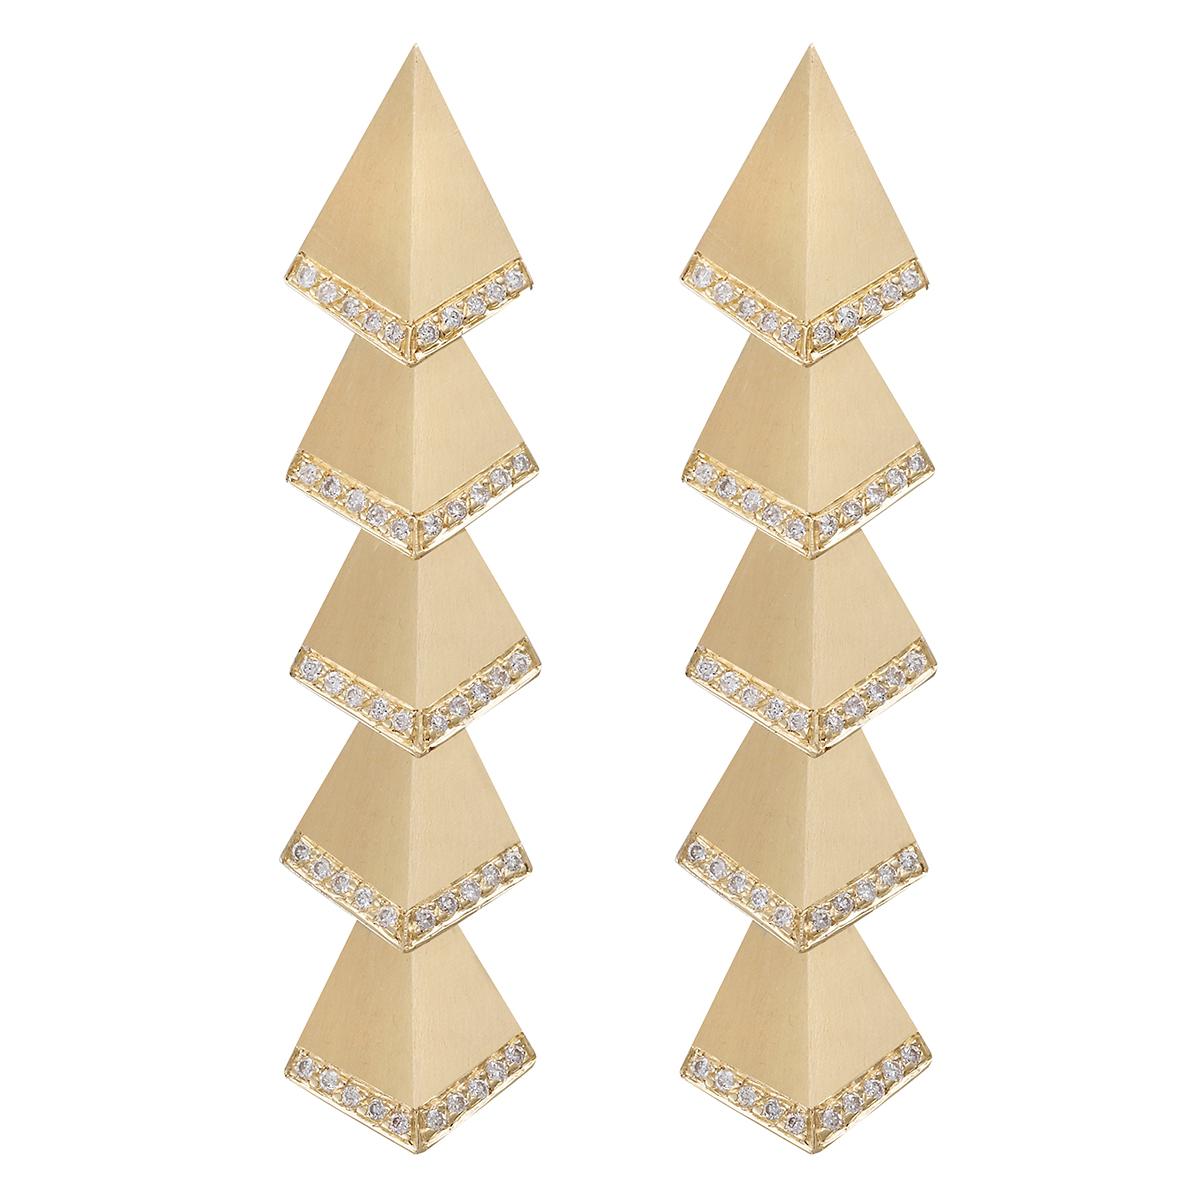 Ileana Makri 18 karat Gold, Satin-finished, Multi Rombus Diamond Deco Earrings For Sale